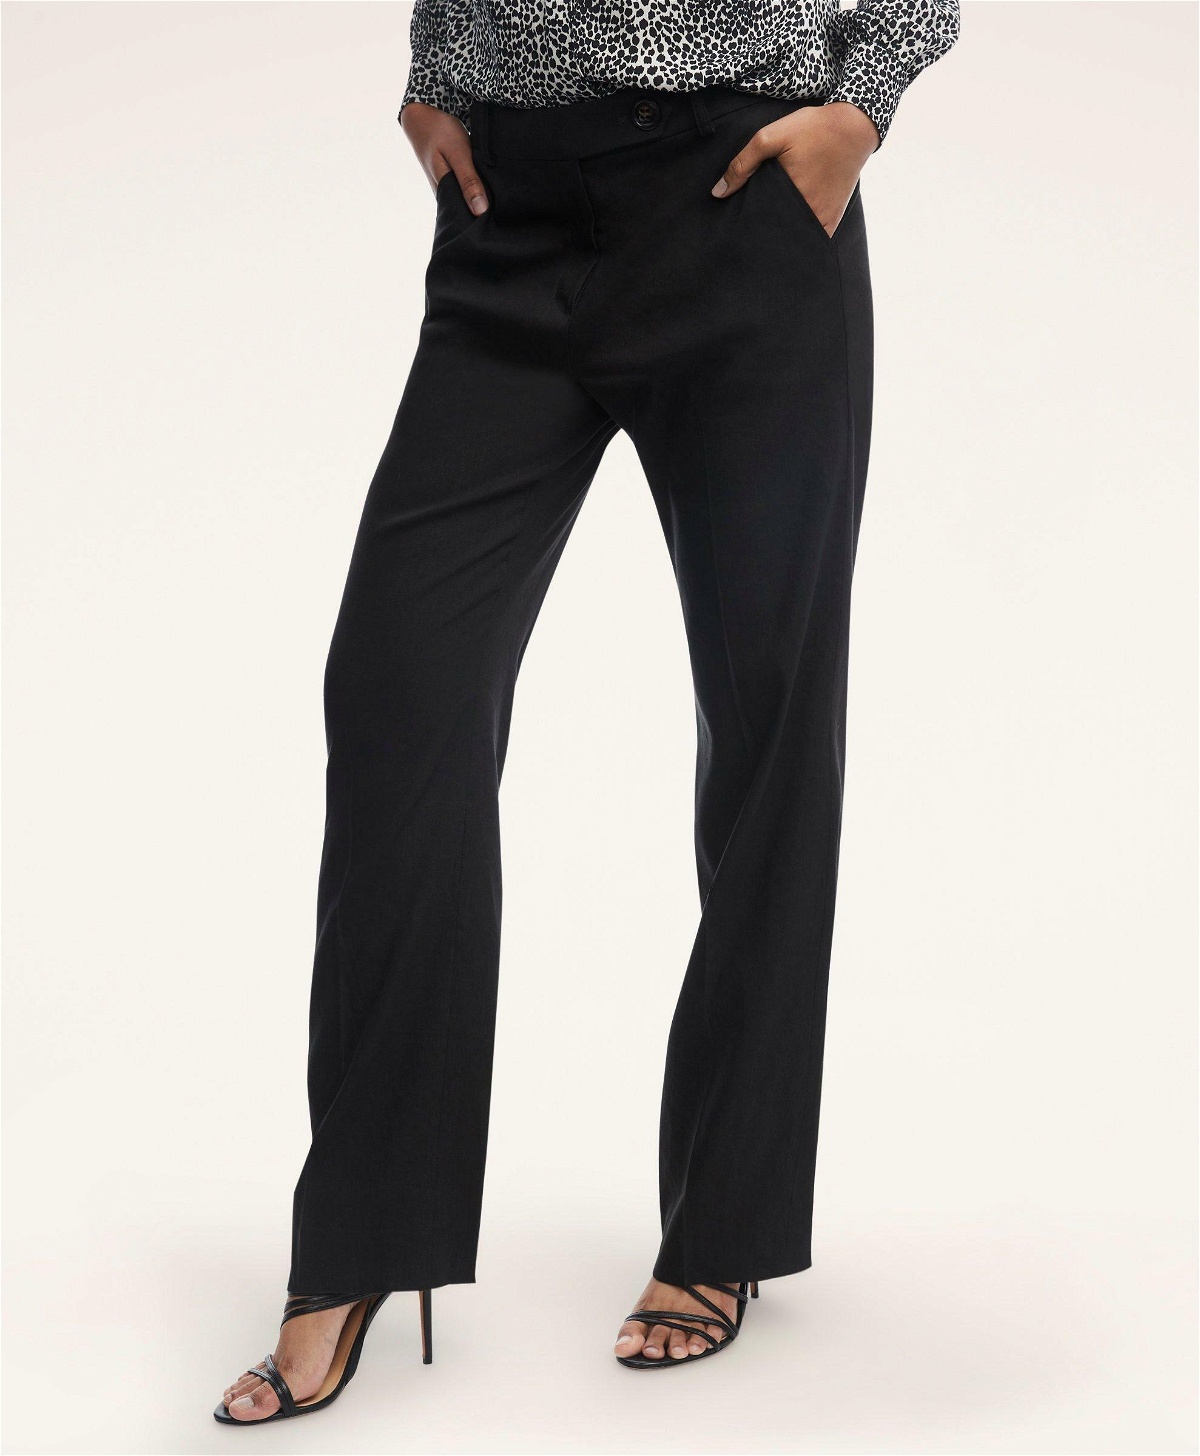 Wide-leg Linen-blend Pants - Black - Ladies